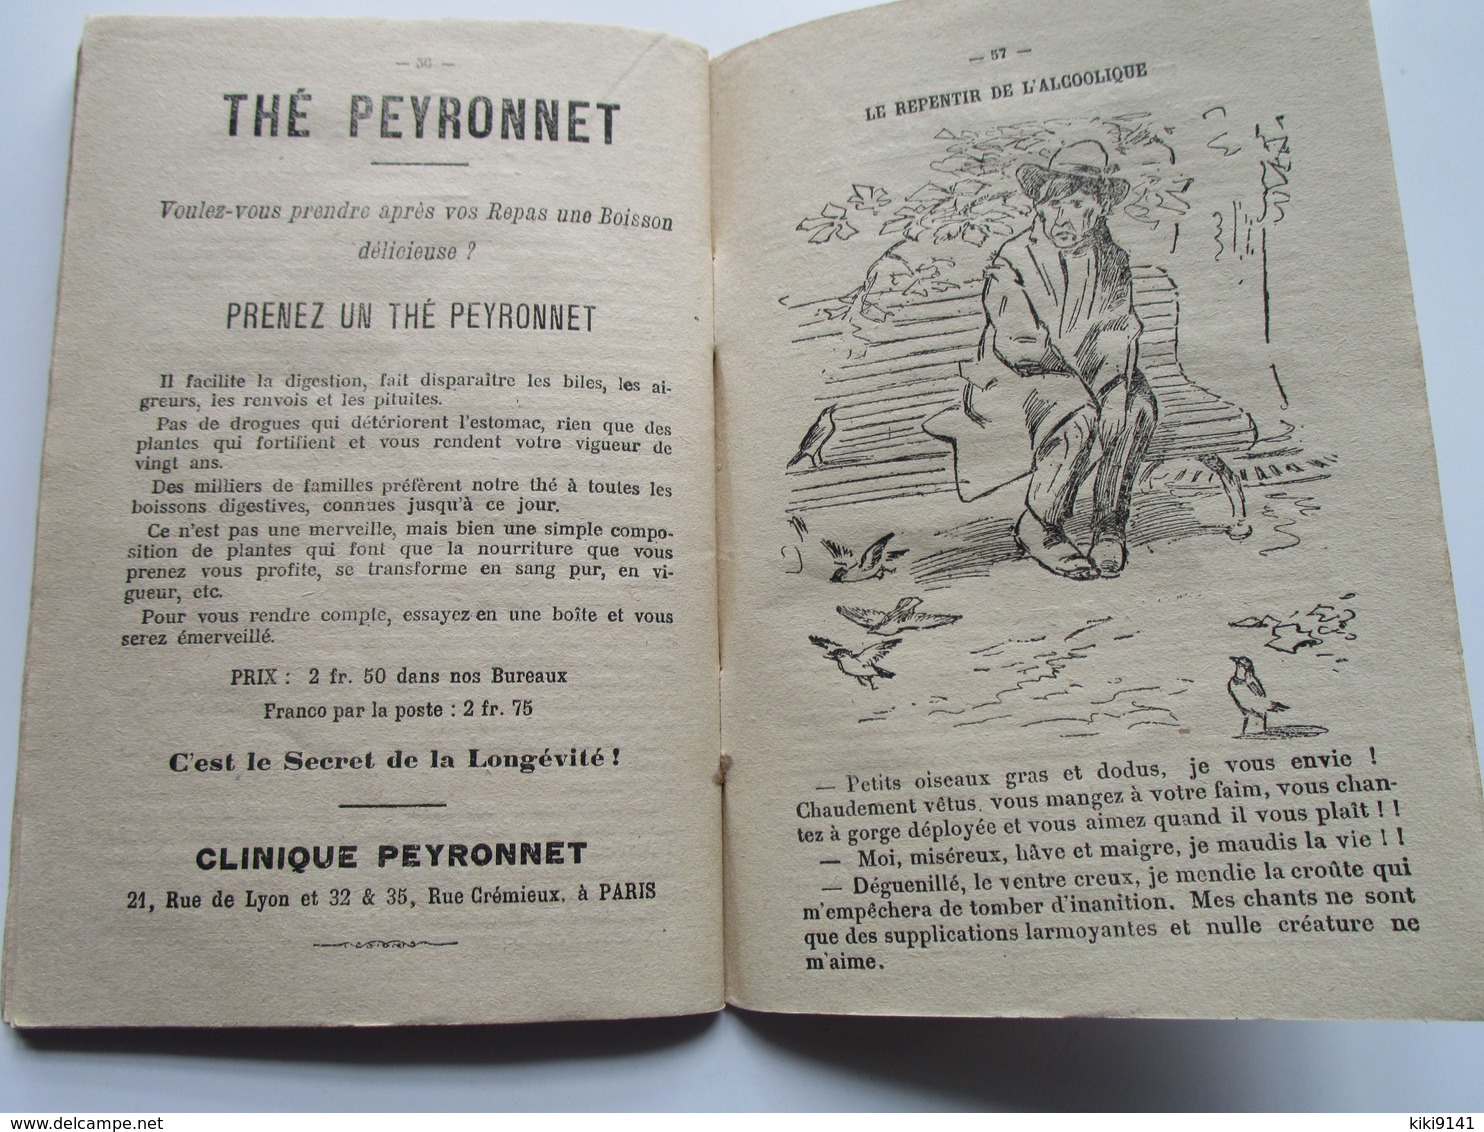 Almanach du Médecin des Pauvres - 1910 - Par le Professeur L. PEYRONNET (64 pages)